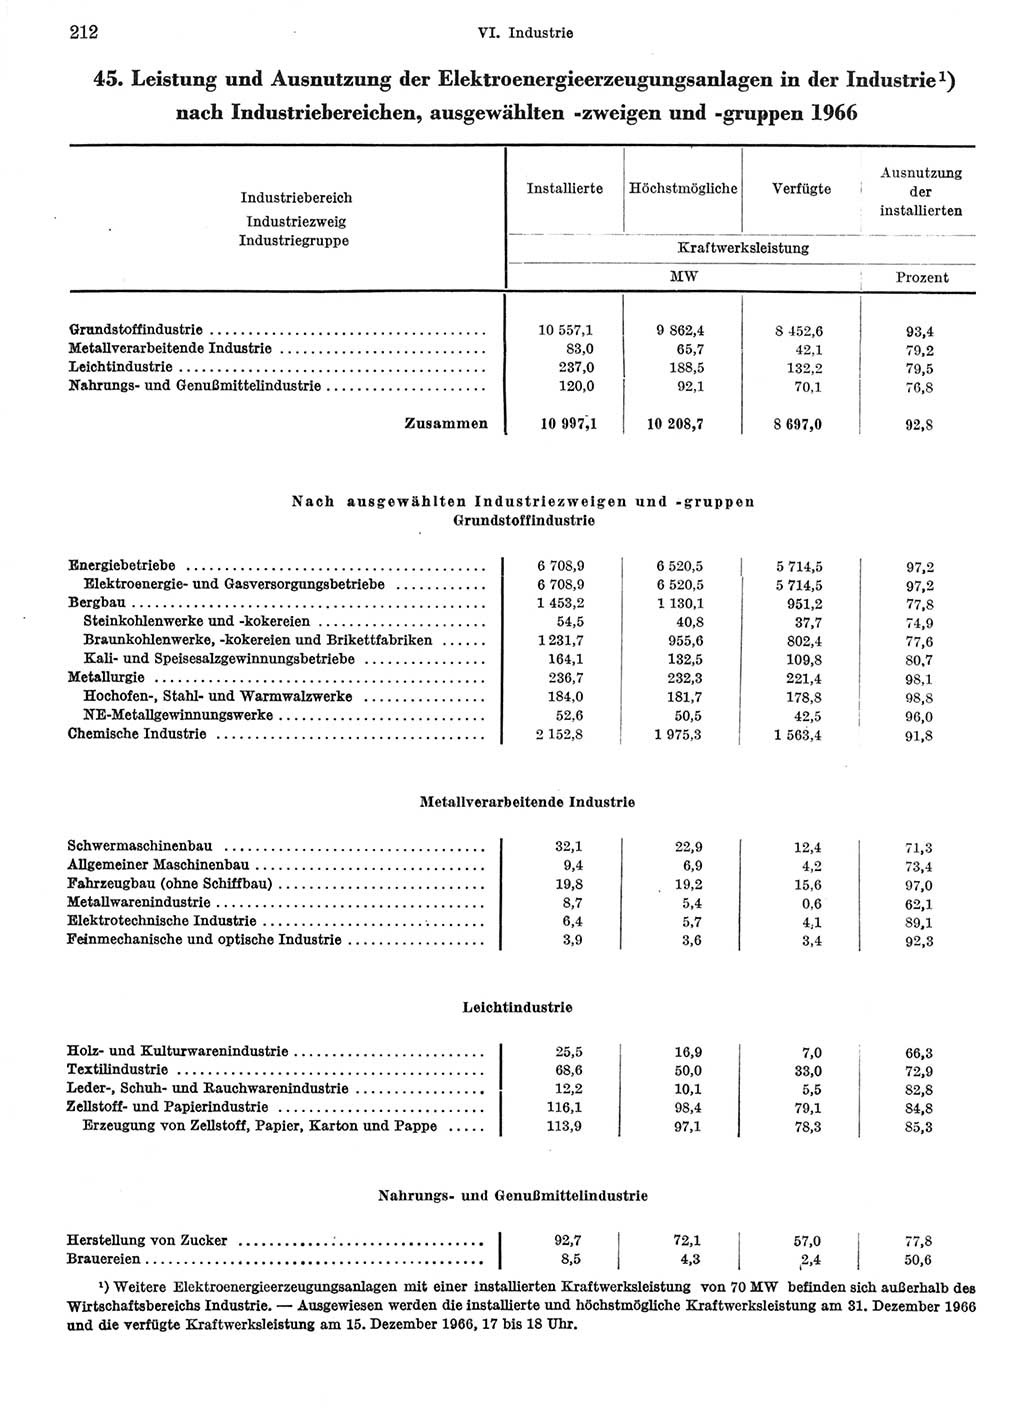 Statistisches Jahrbuch der Deutschen Demokratischen Republik (DDR) 1967, Seite 212 (Stat. Jb. DDR 1967, S. 212)